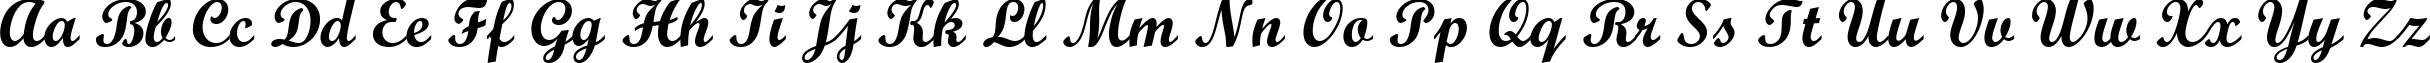 Пример написания английского алфавита шрифтом Script MT Bold